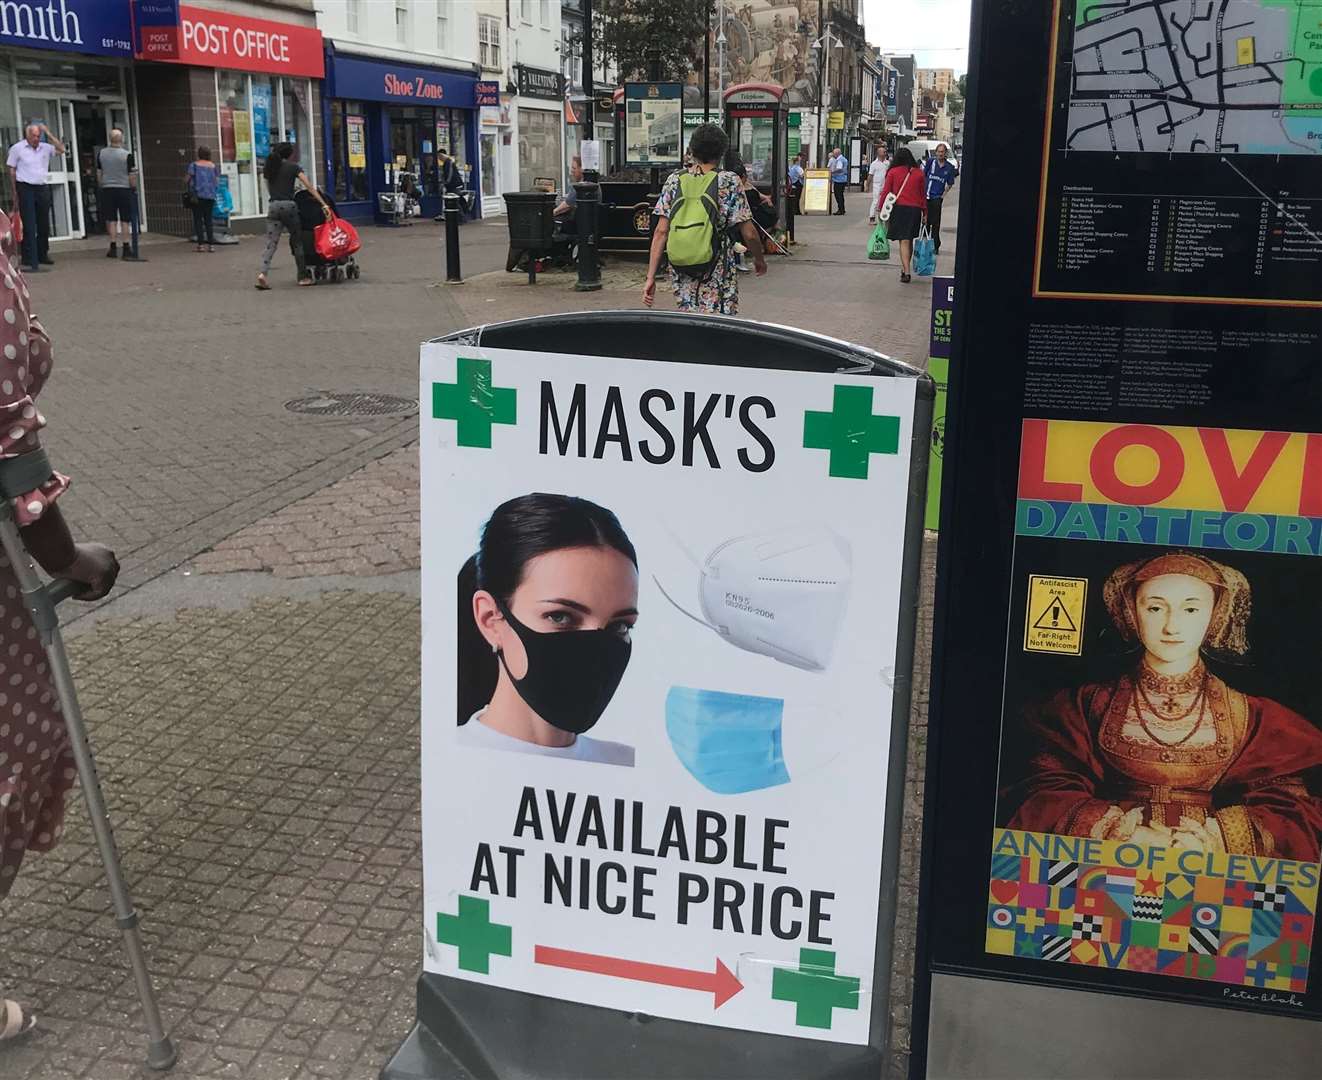 A billboard advertises masks for sale in Dartford